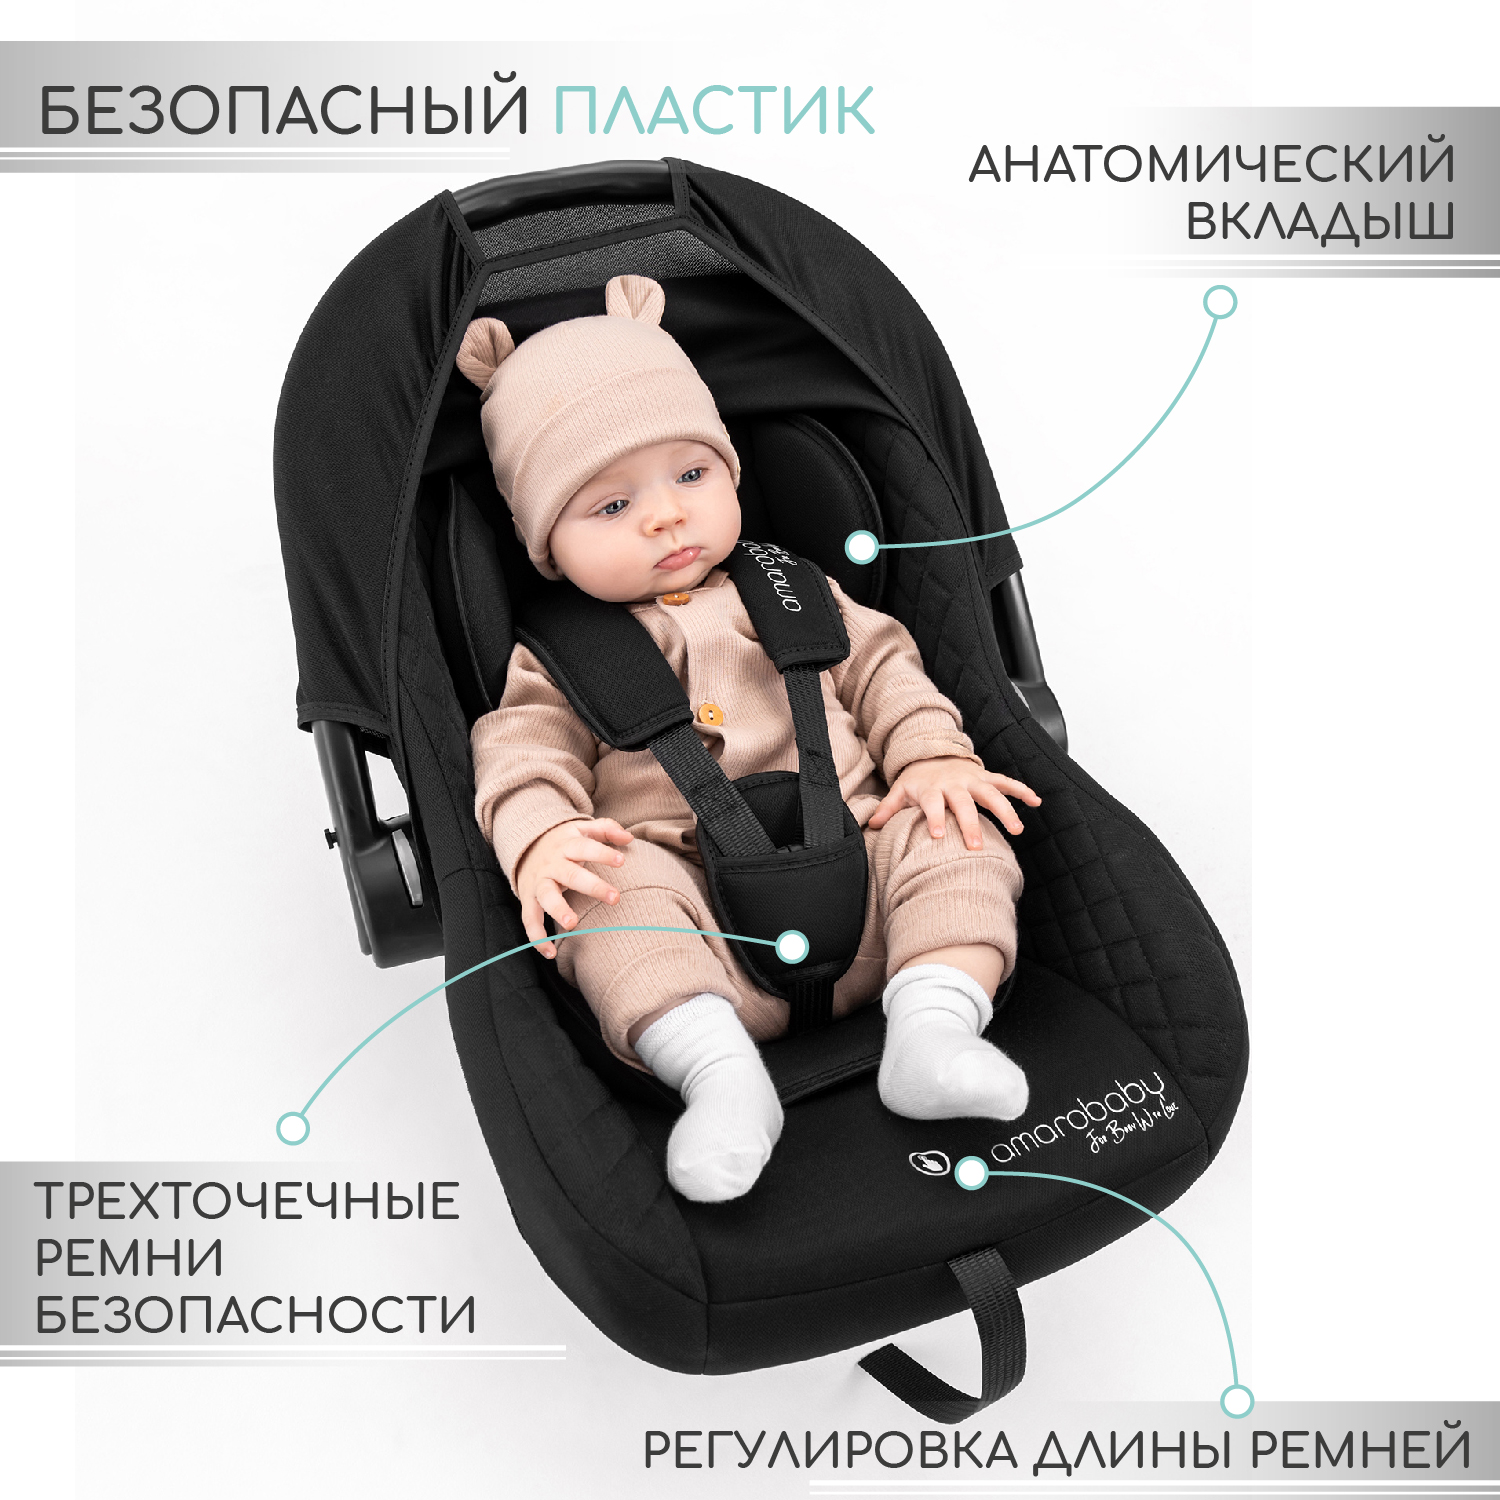 Автокресло детское AmaroBaby Baby comfort группа 0+ серый - фото 2